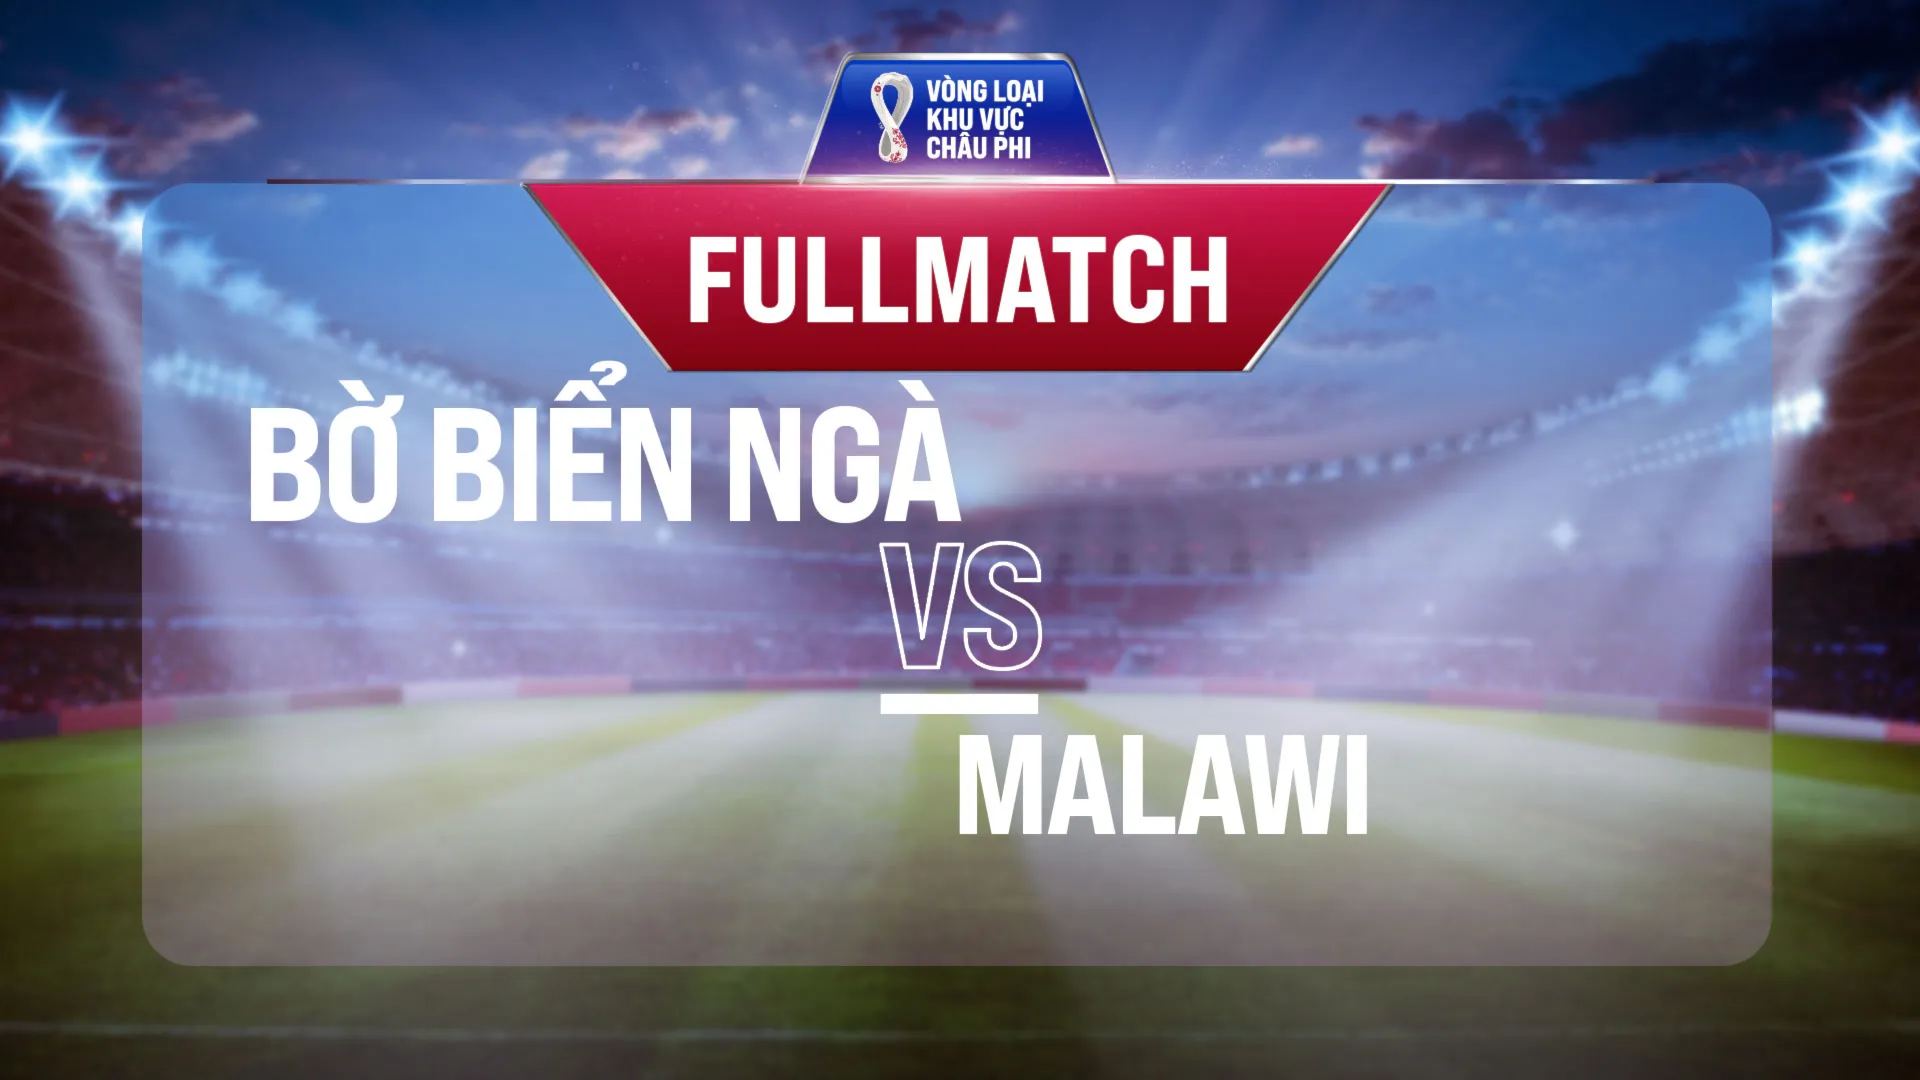 Full match Bờ Biển Ngà vs Malawi (Lượt trận 4 Vòng Loại thứ 2 World Cup 2022 - Khu vực châu Phi)